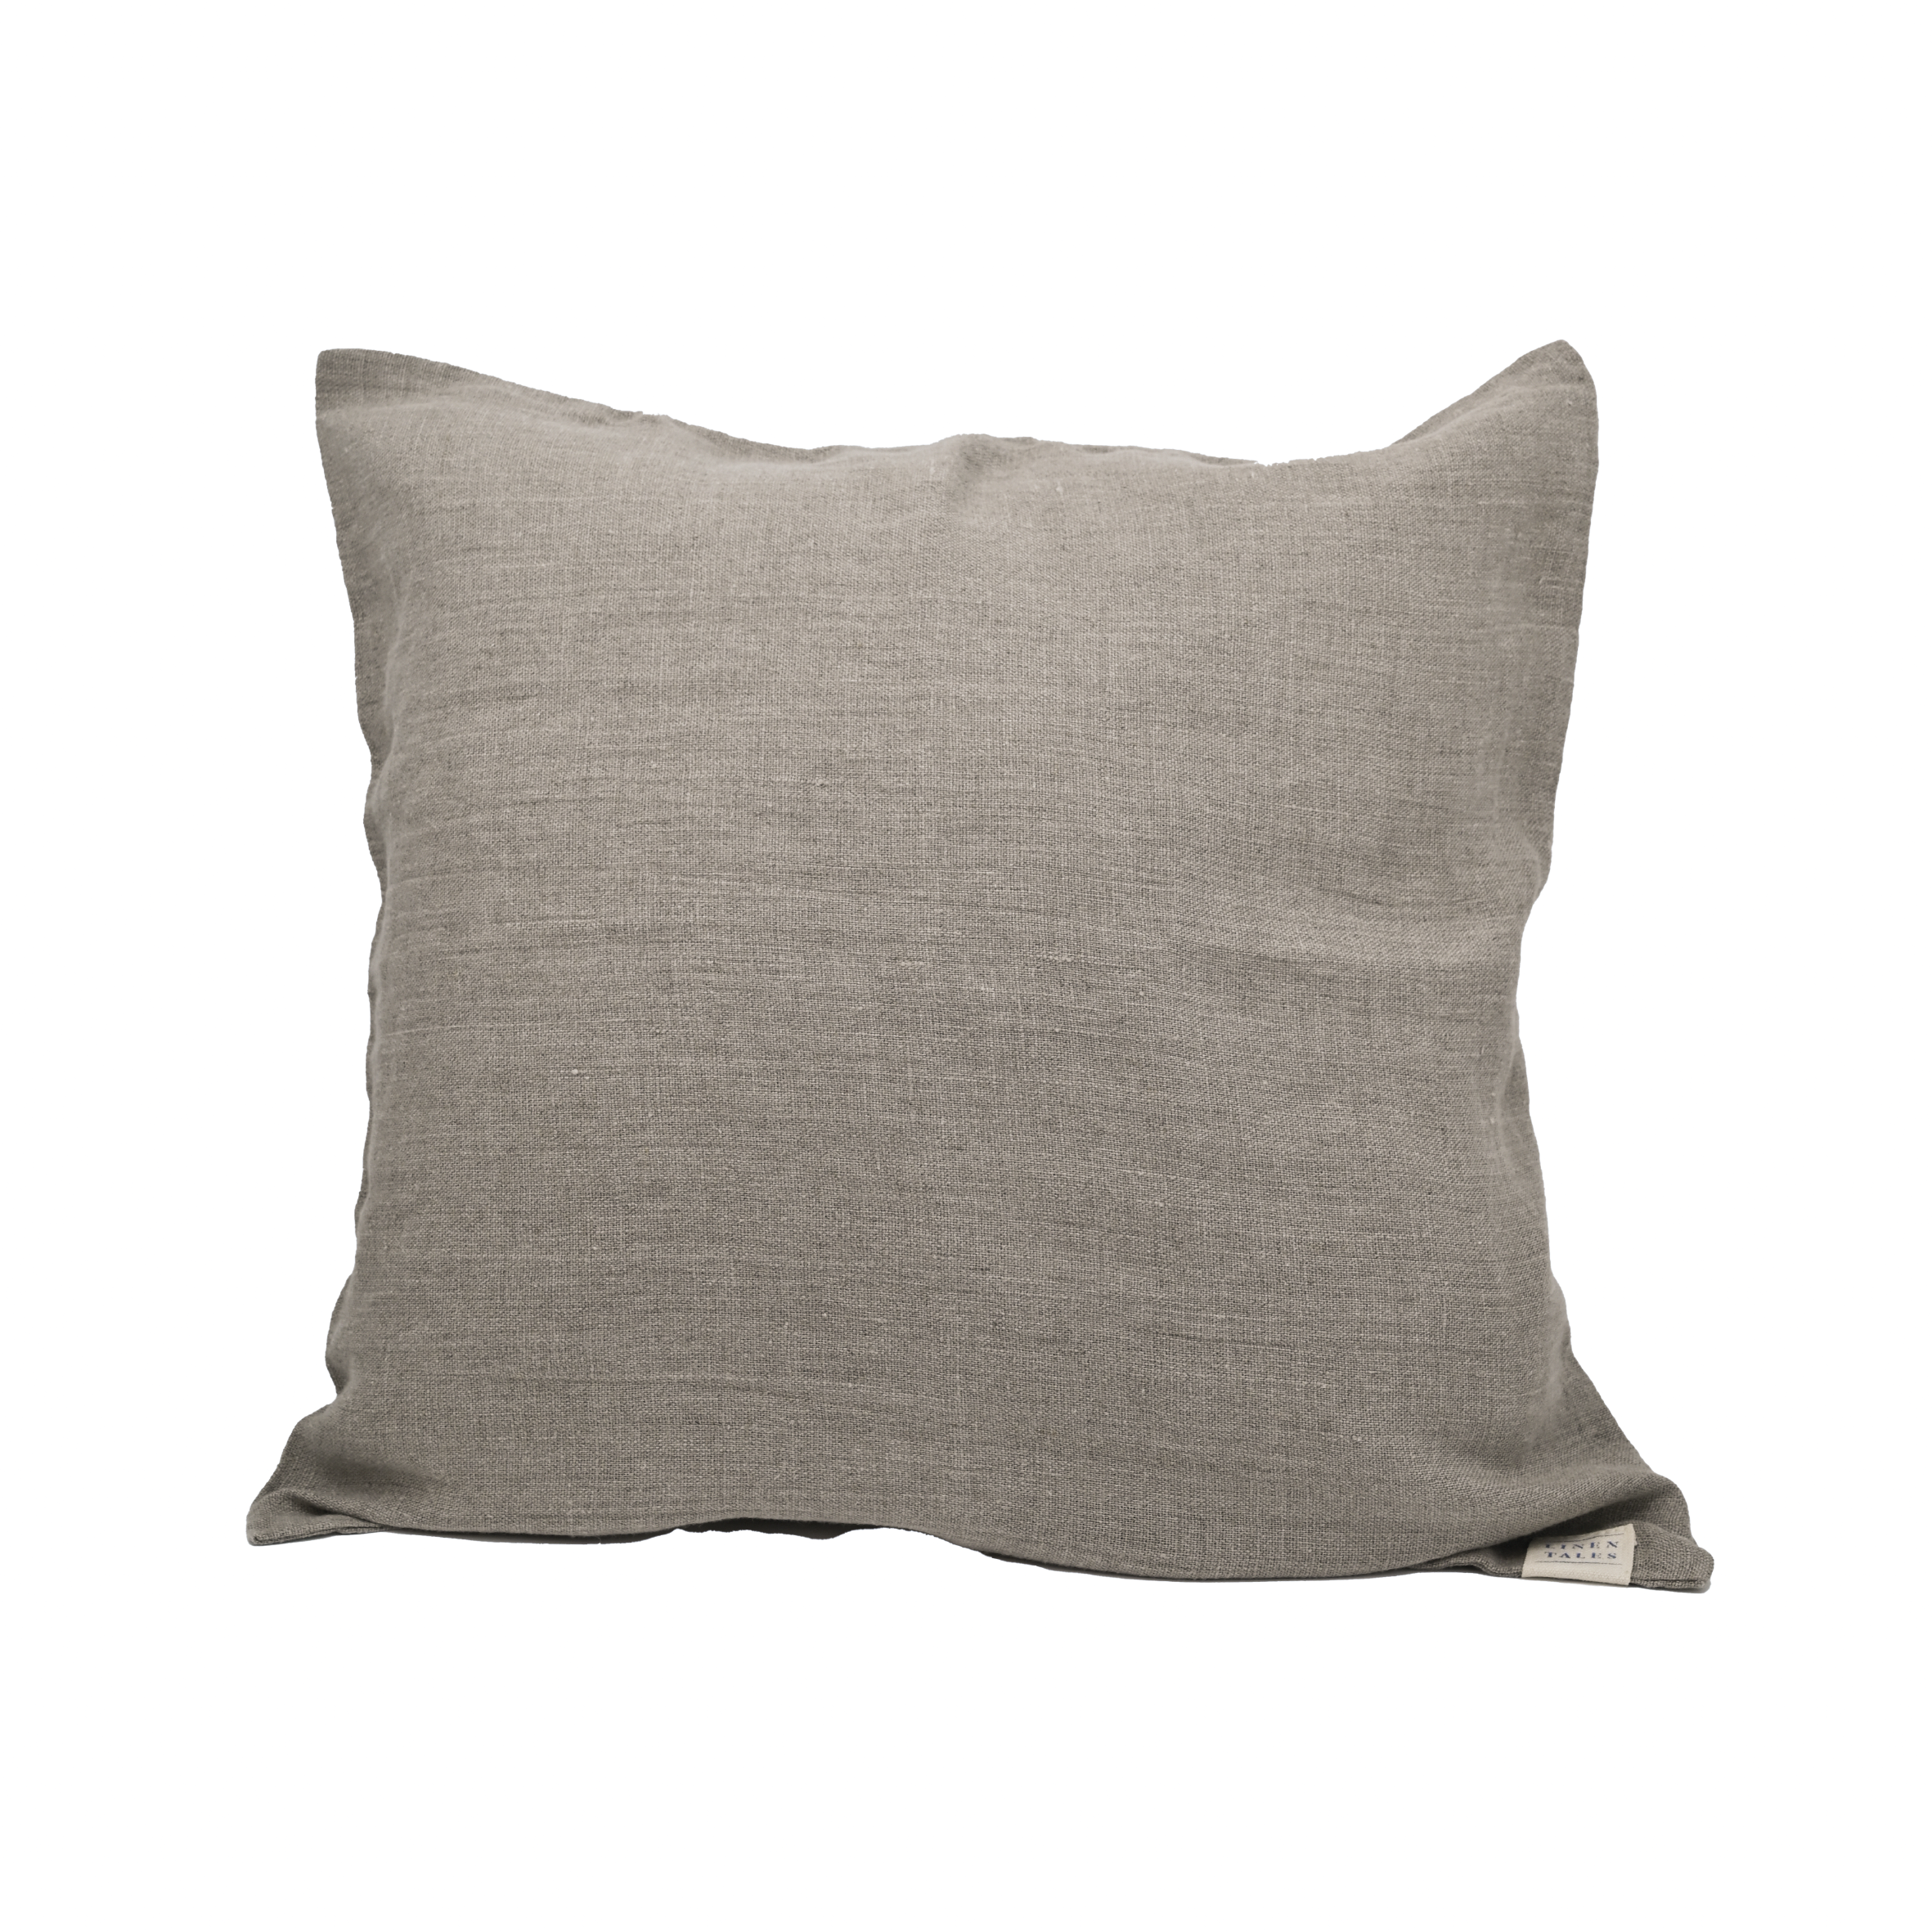 Linen pillow - Natural